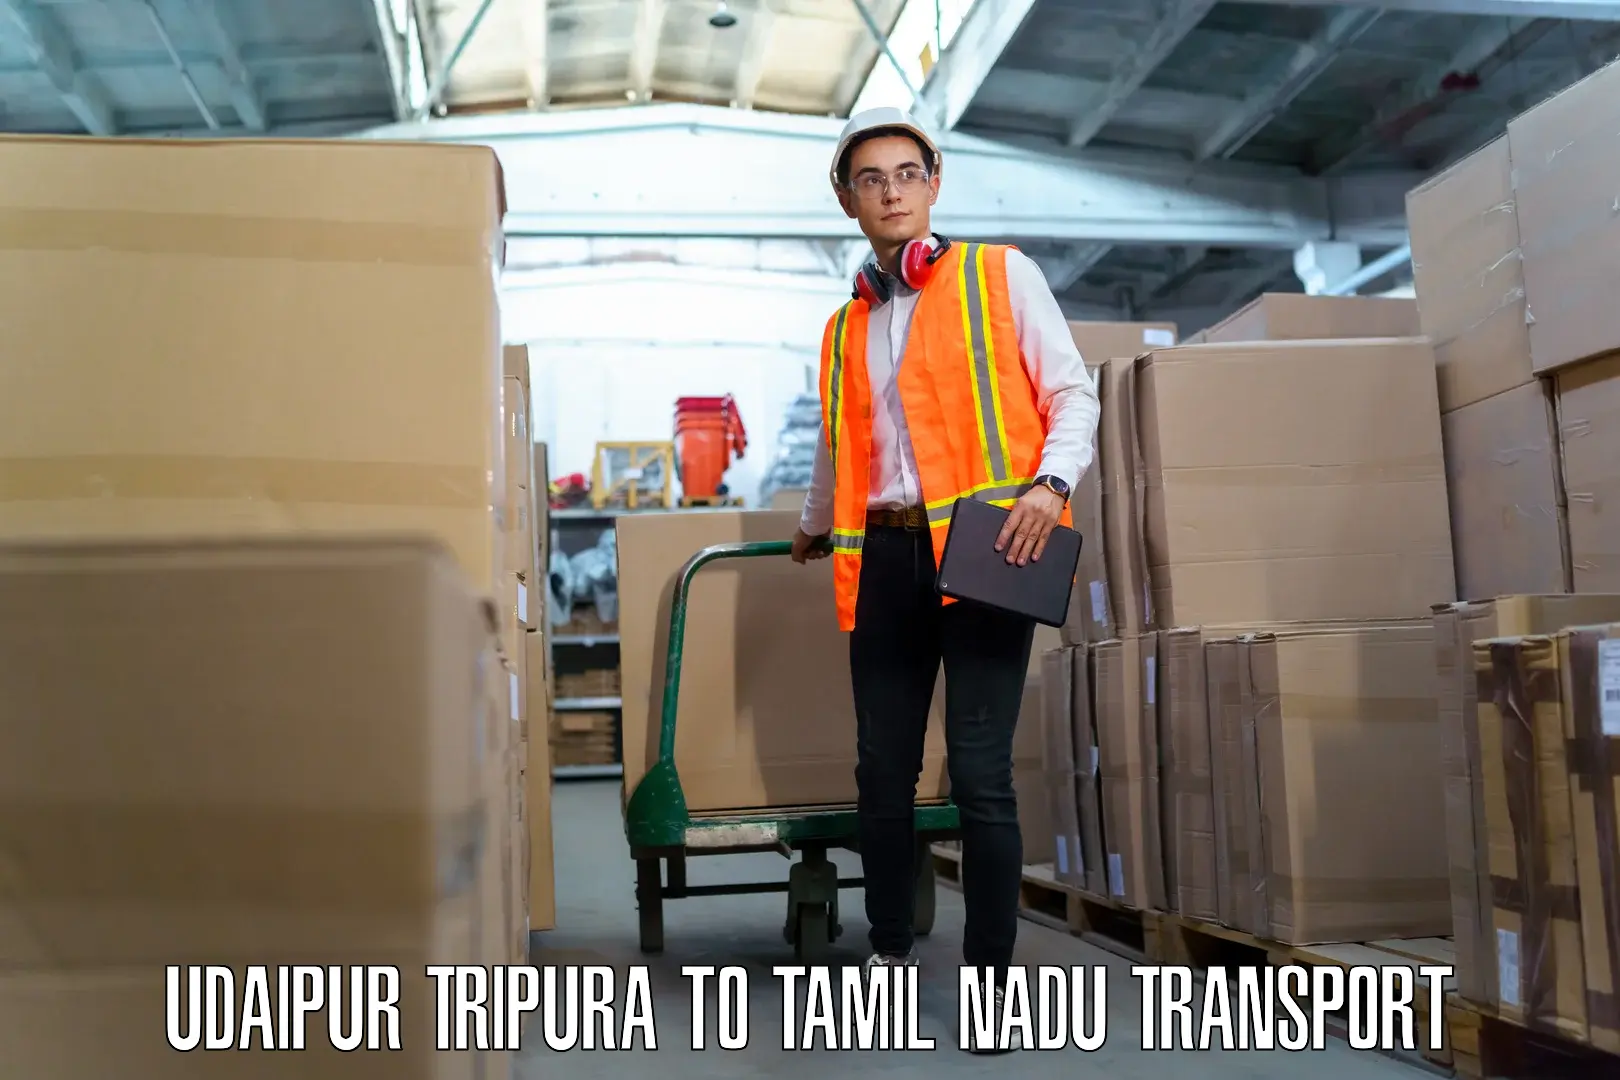 Vehicle parcel service Udaipur Tripura to IIT Madras